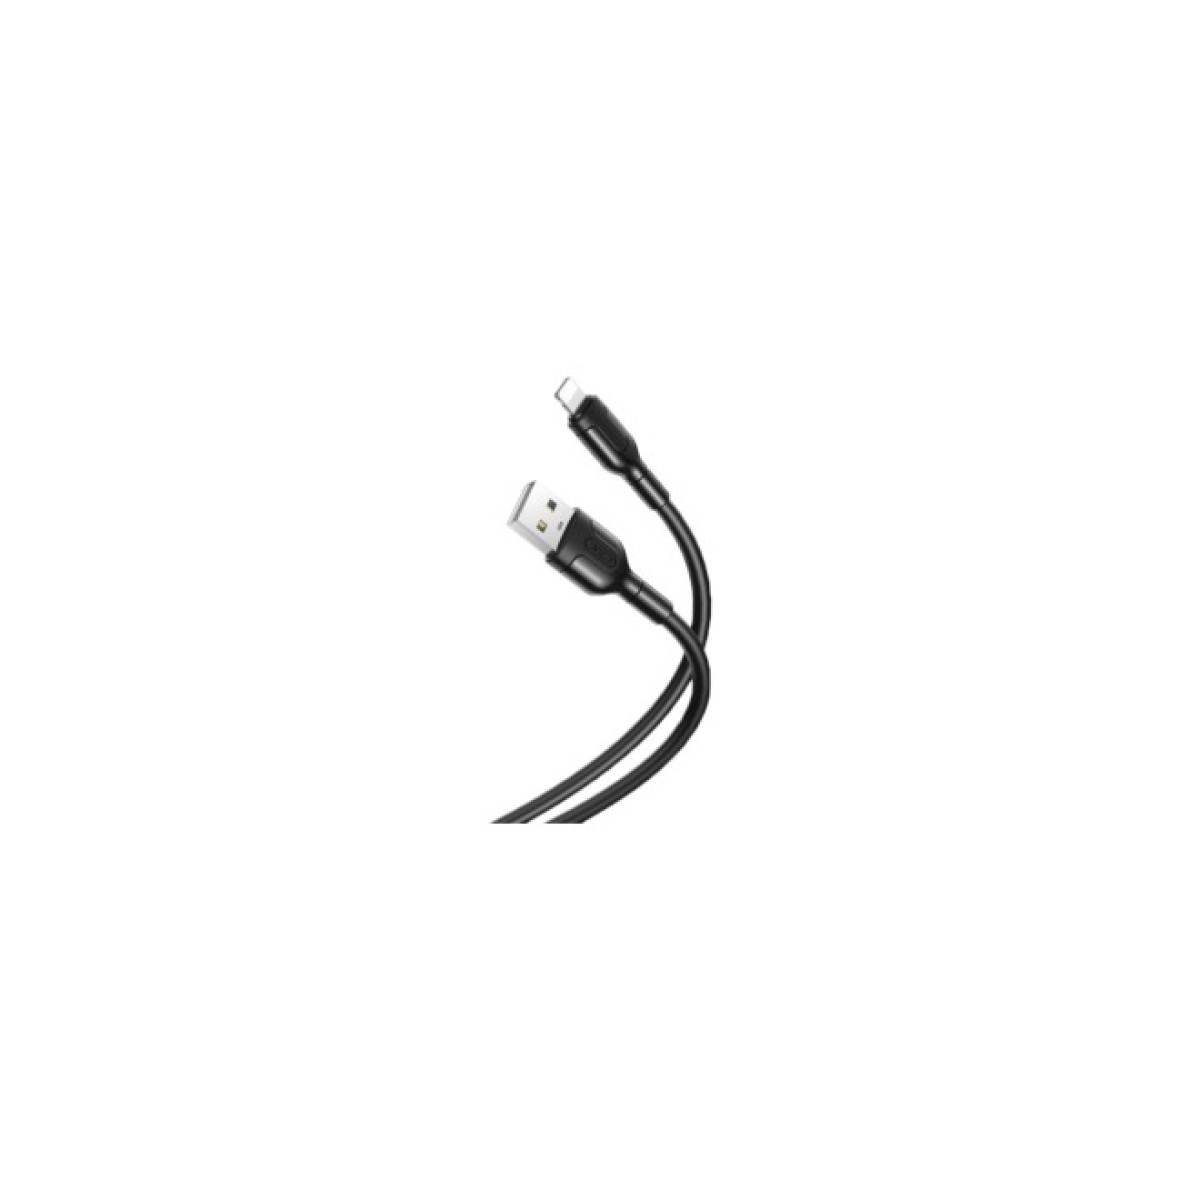 Дата кабель USB 2.0 AM to Lightning 1.0m NB212 2.1A Black XO (XO-NB212i-BK) 256_256.jpg